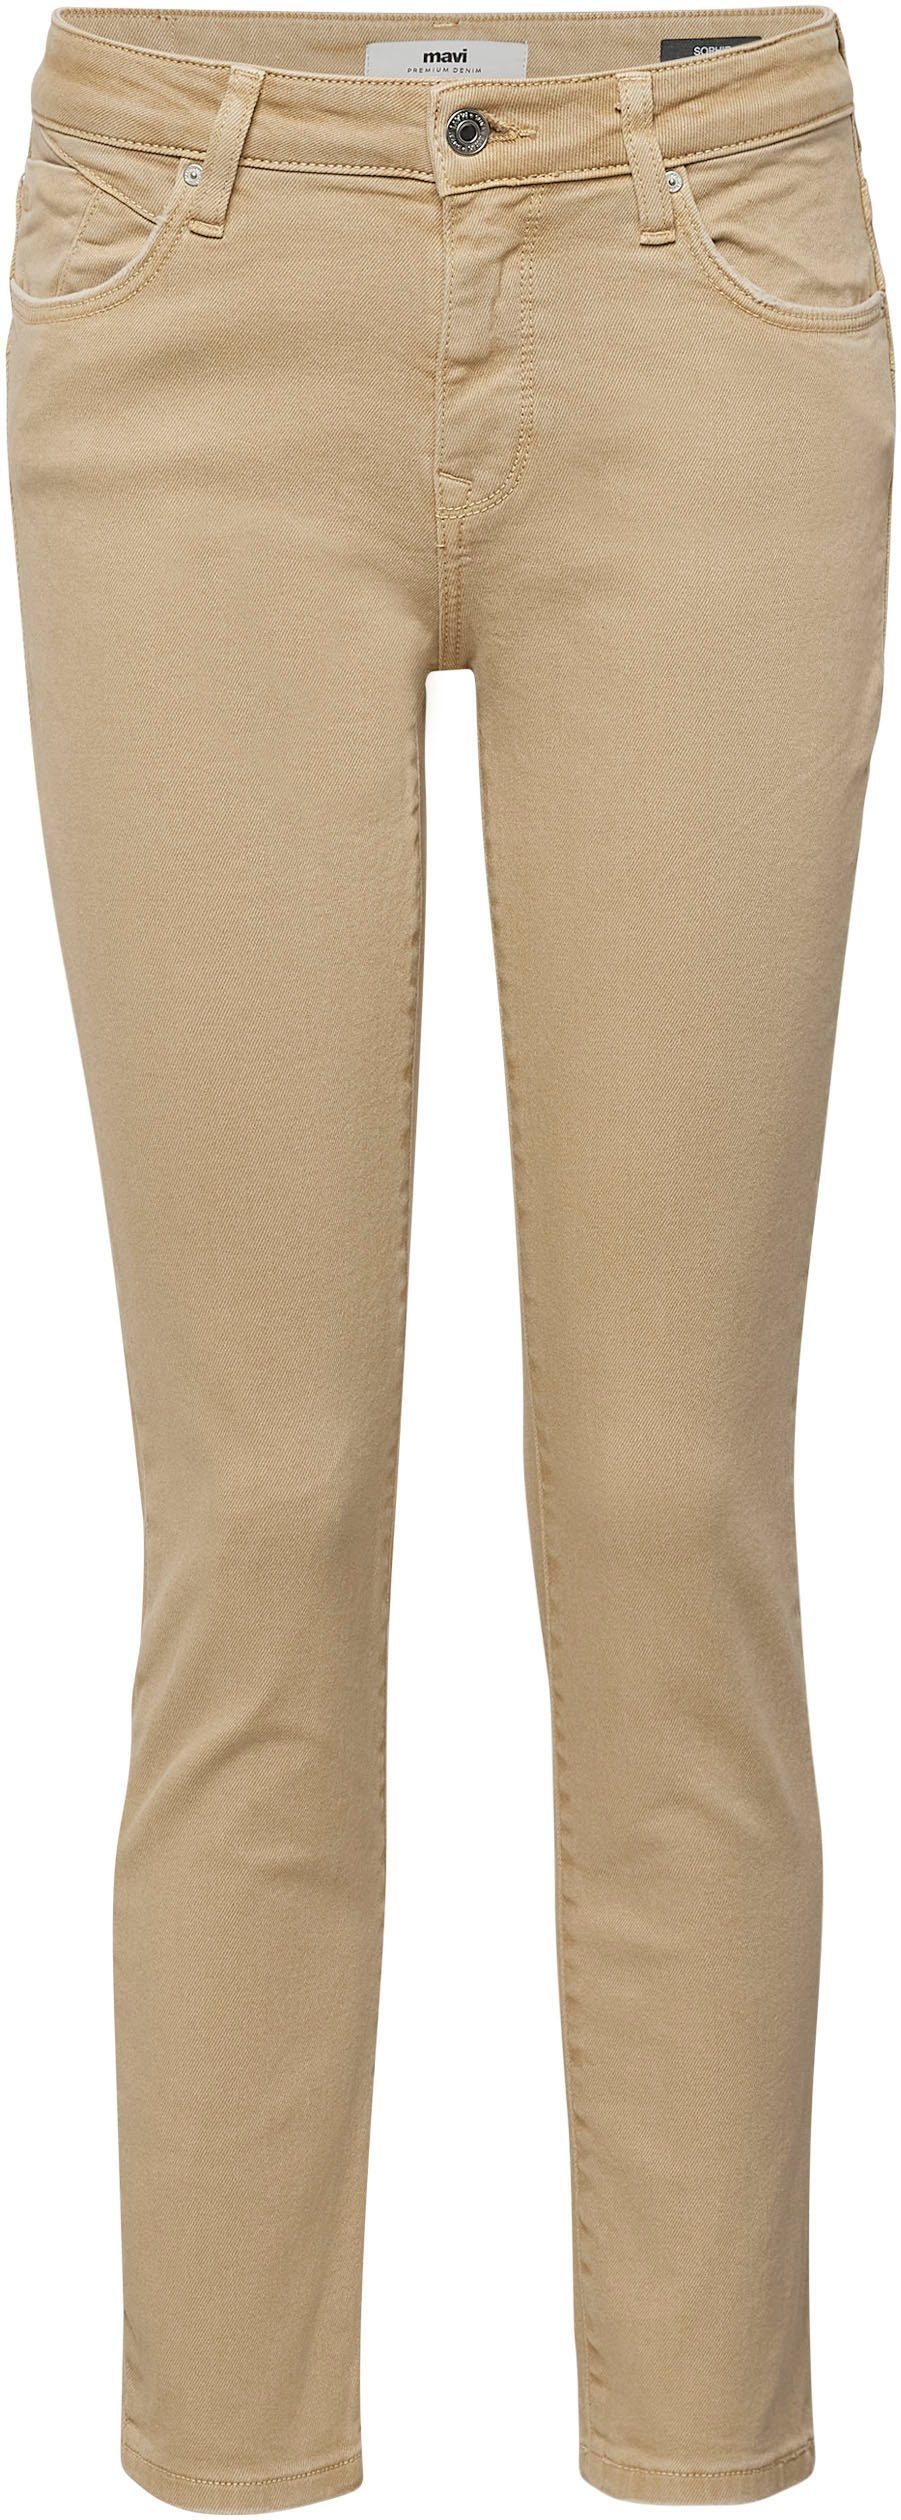 hochwertiger Stretchdenim trageangenehmer (beige) camel Verarbeitung Mavi dank Slim-fit-Jeans